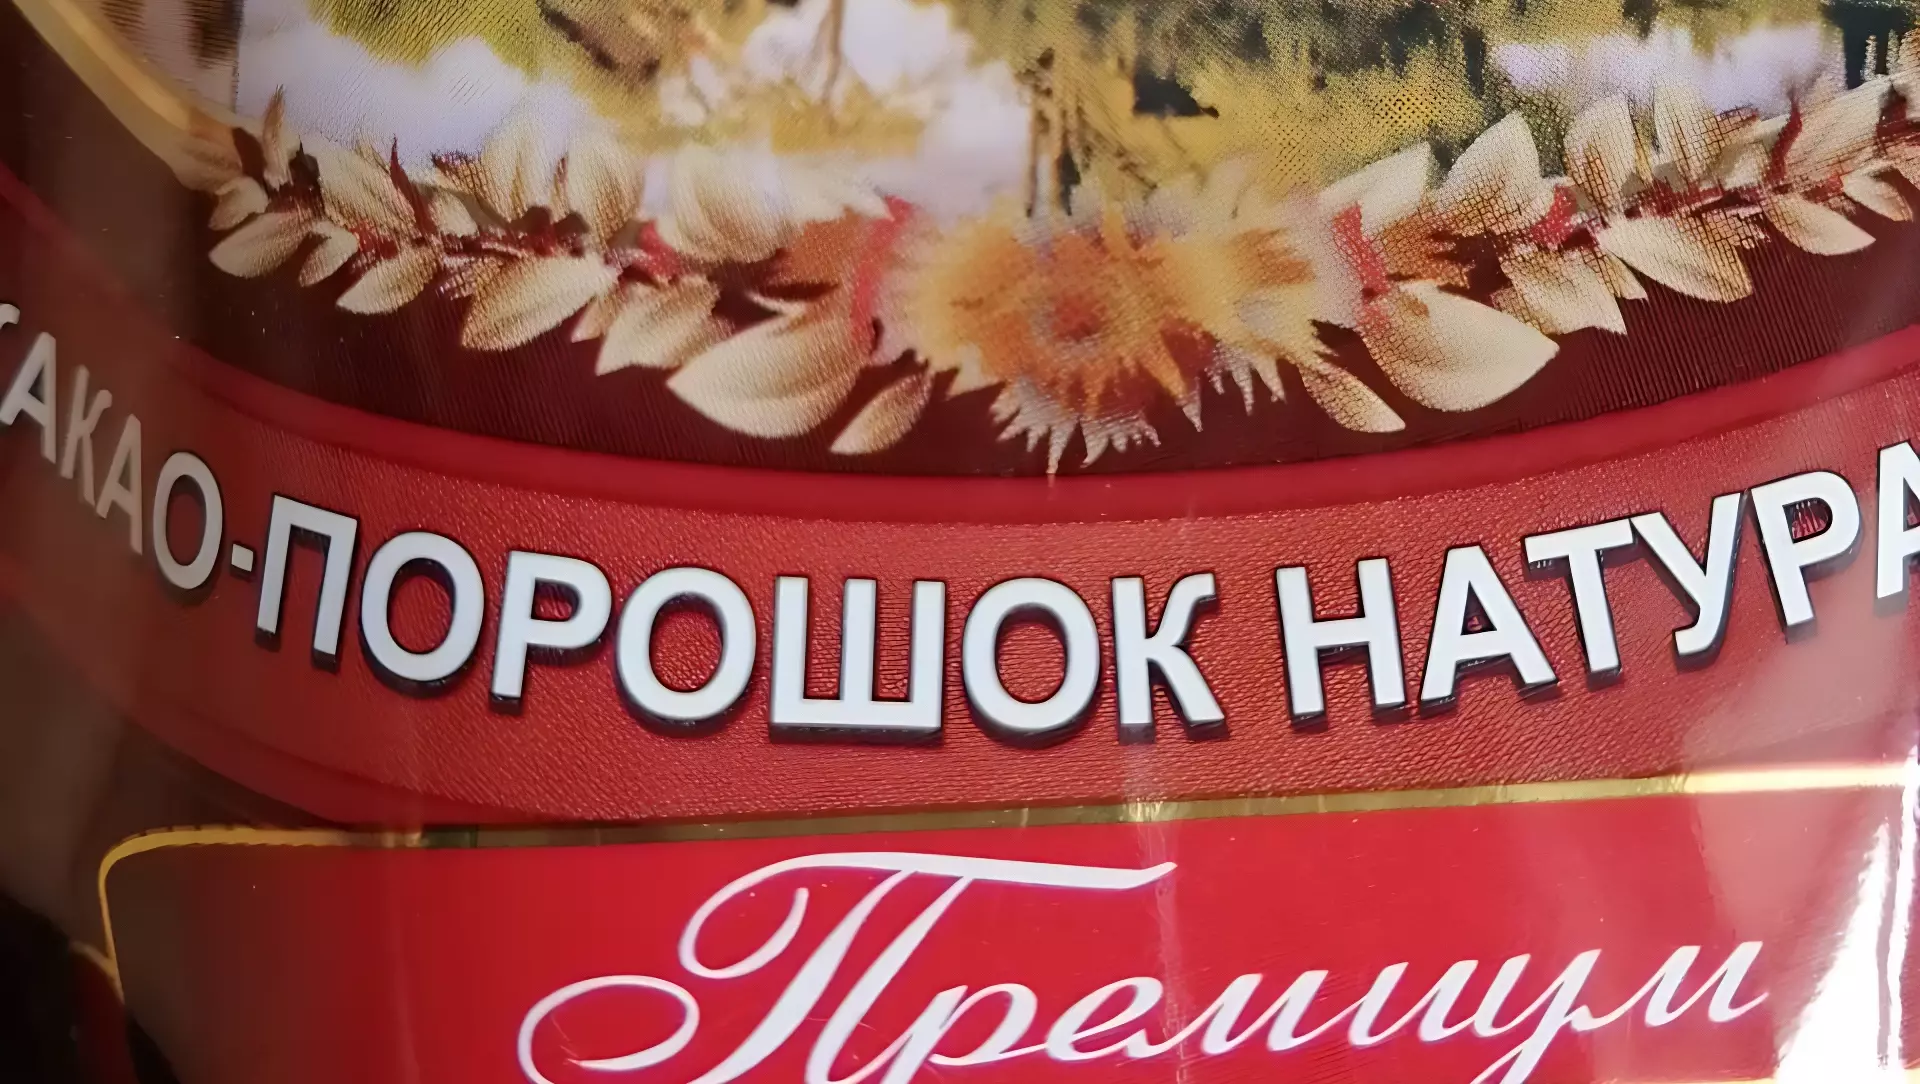 Жителям Приморского края рекомендуют употреблять какао